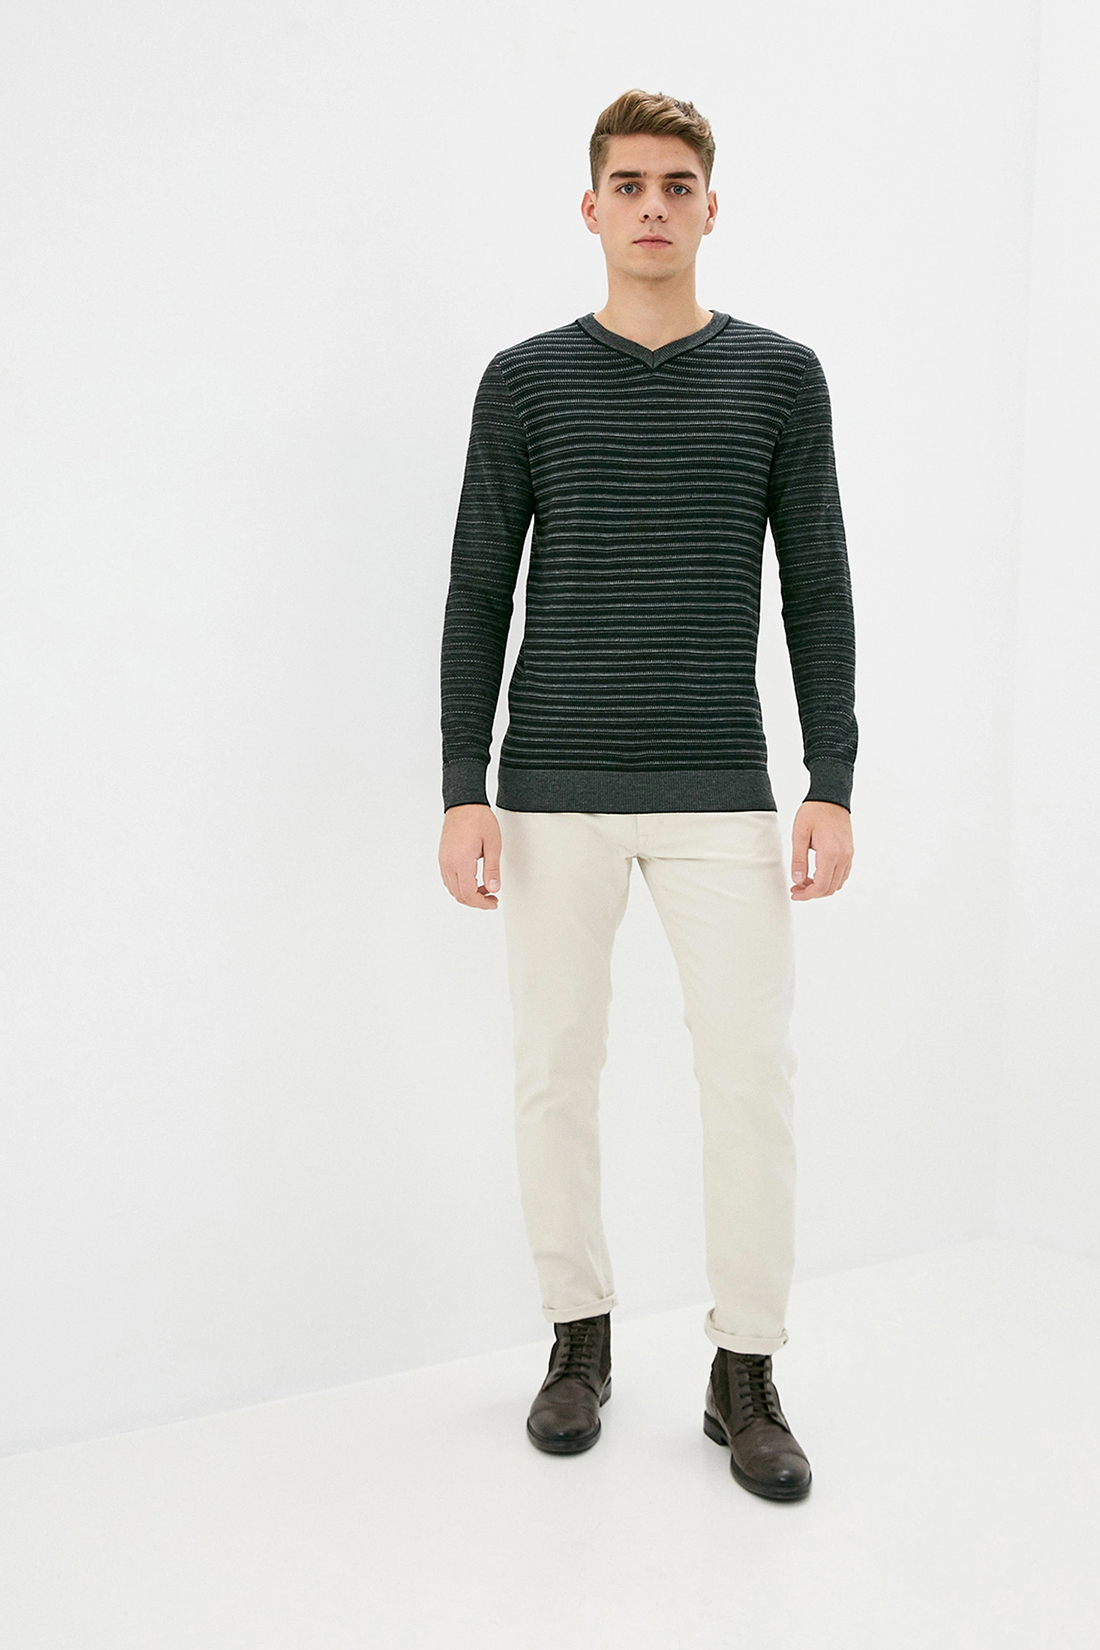 Пуловер с рельефными полосками (арт. baon B639502), размер XL, цвет белый Пуловер с рельефными полосками (арт. baon B639502) - фото 4